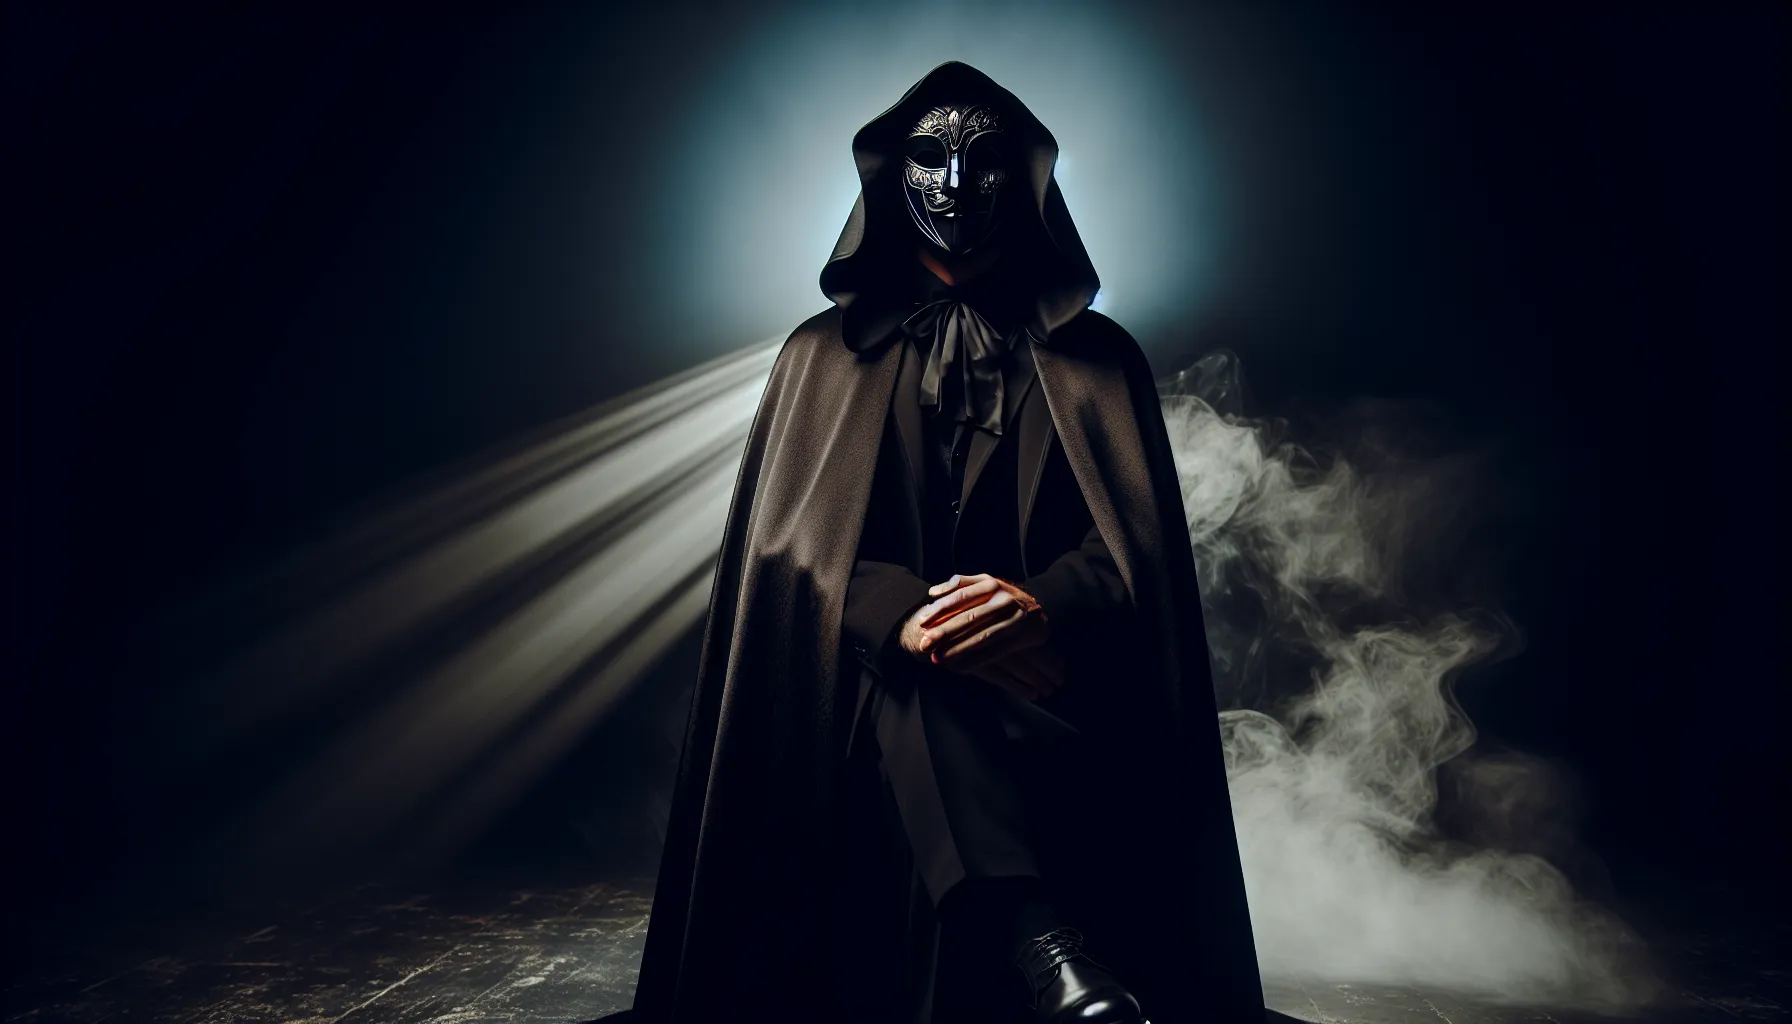 Imagen de un hombre misterioso con una capa oscura y una máscara en un escenario oscuro y misterioso